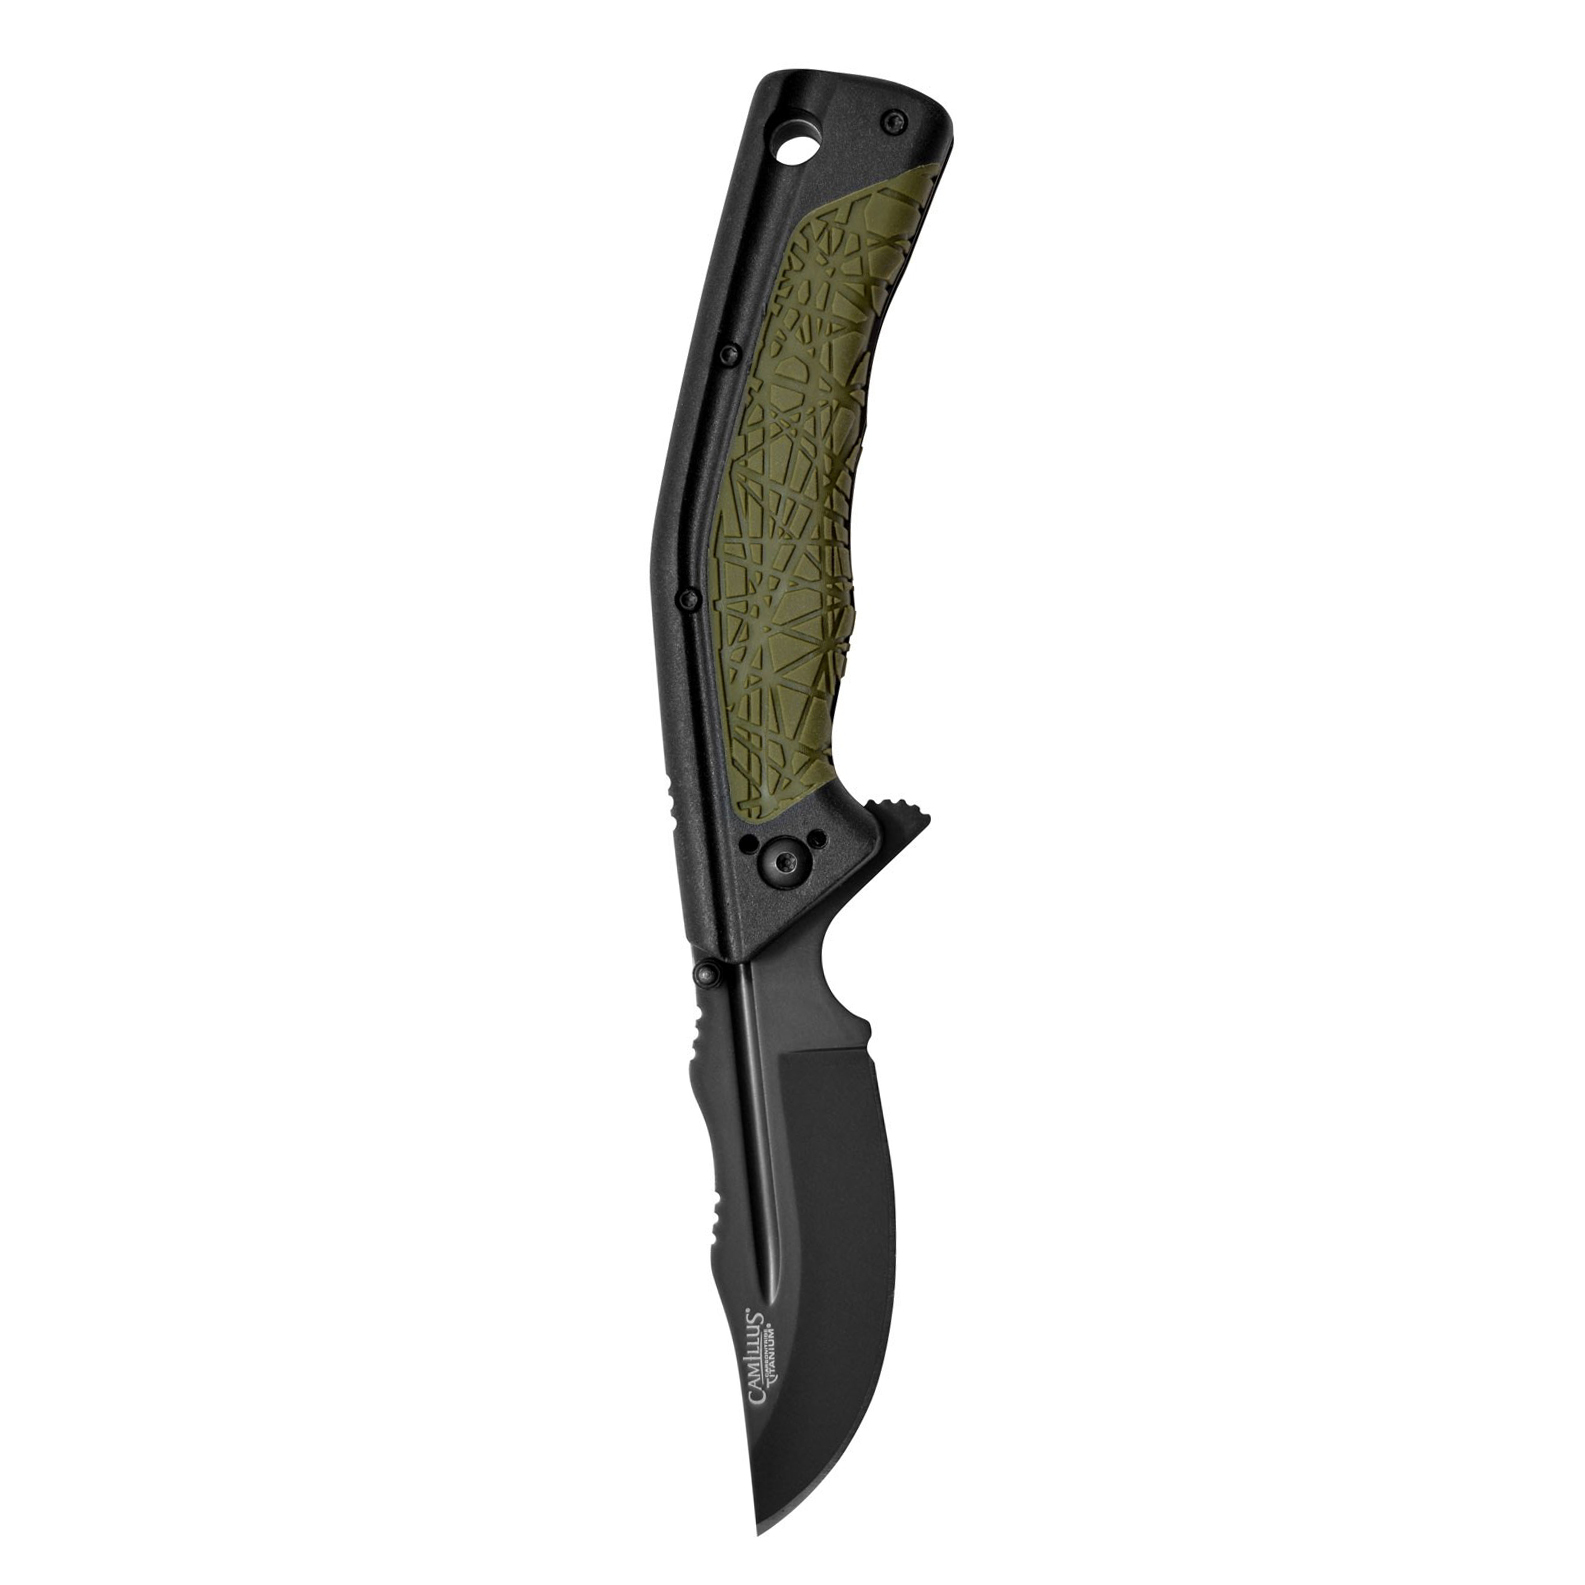 Складной нож Camillus FK-7 Drop Point, сталь AUS-8, рукоять термопластик GFN, чёрно-зеленый от Ножиков